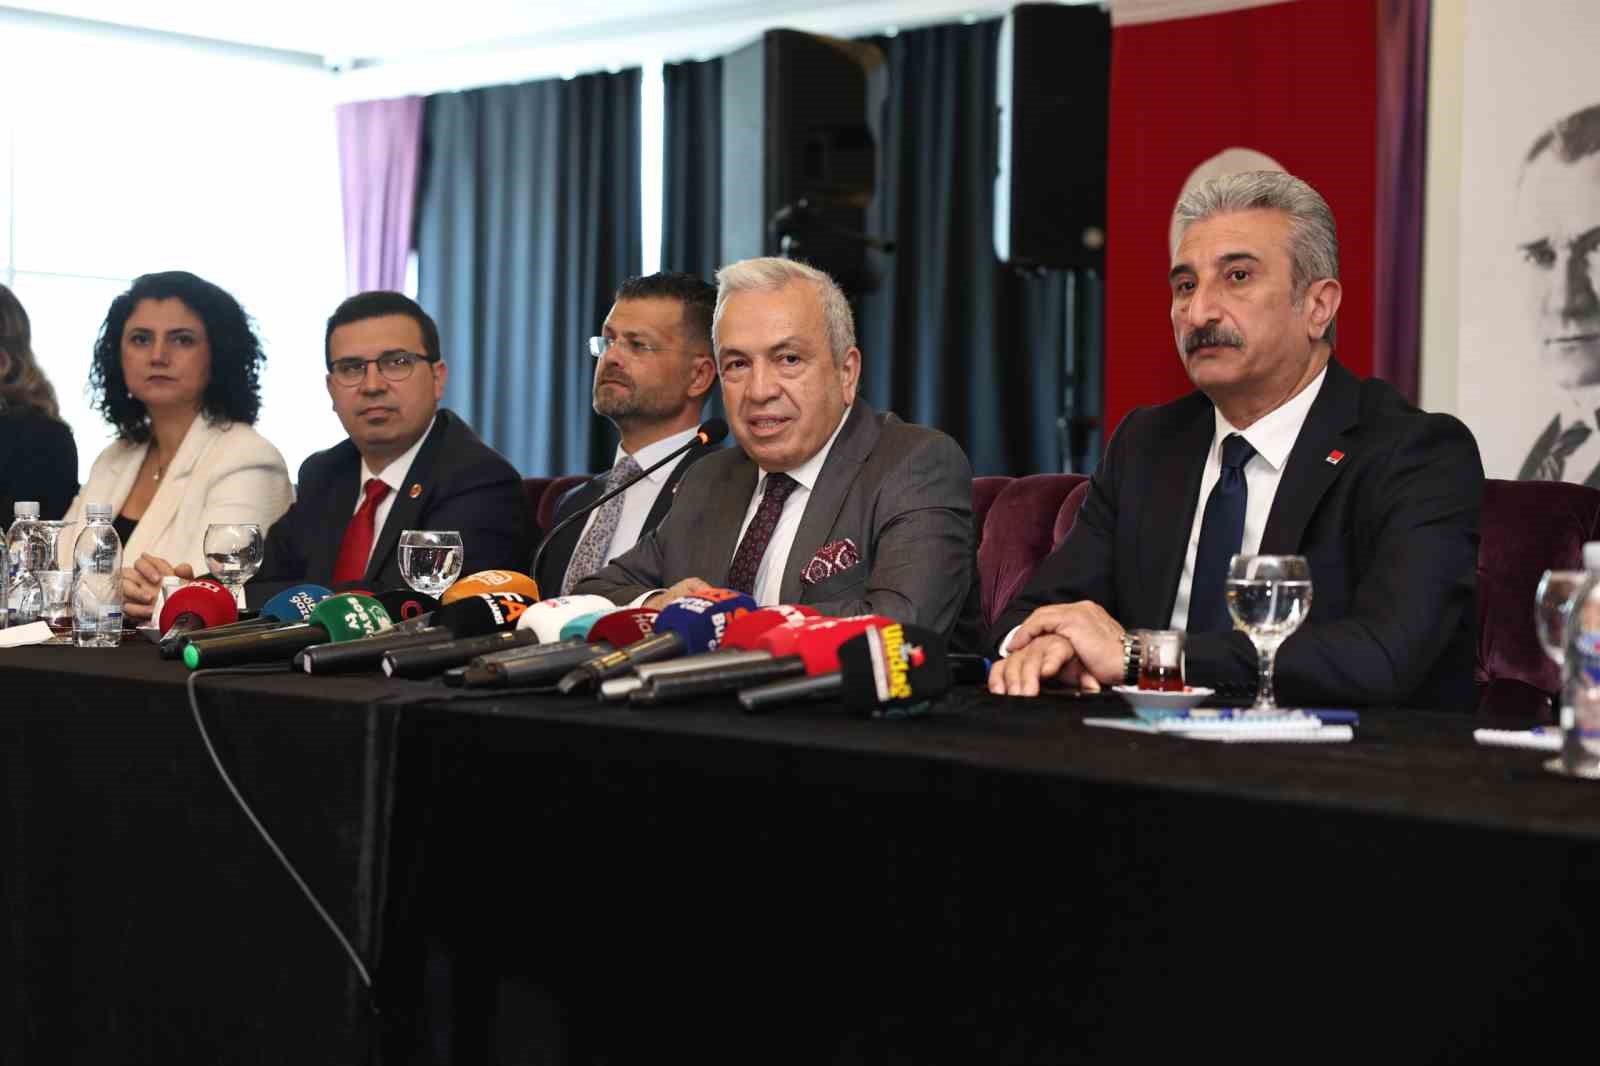 Nilüfer Belediye Başkanı Şadi Özdemir: “Tarım Alanlarına Tek Bir Çivi Çaktırmayacağız”